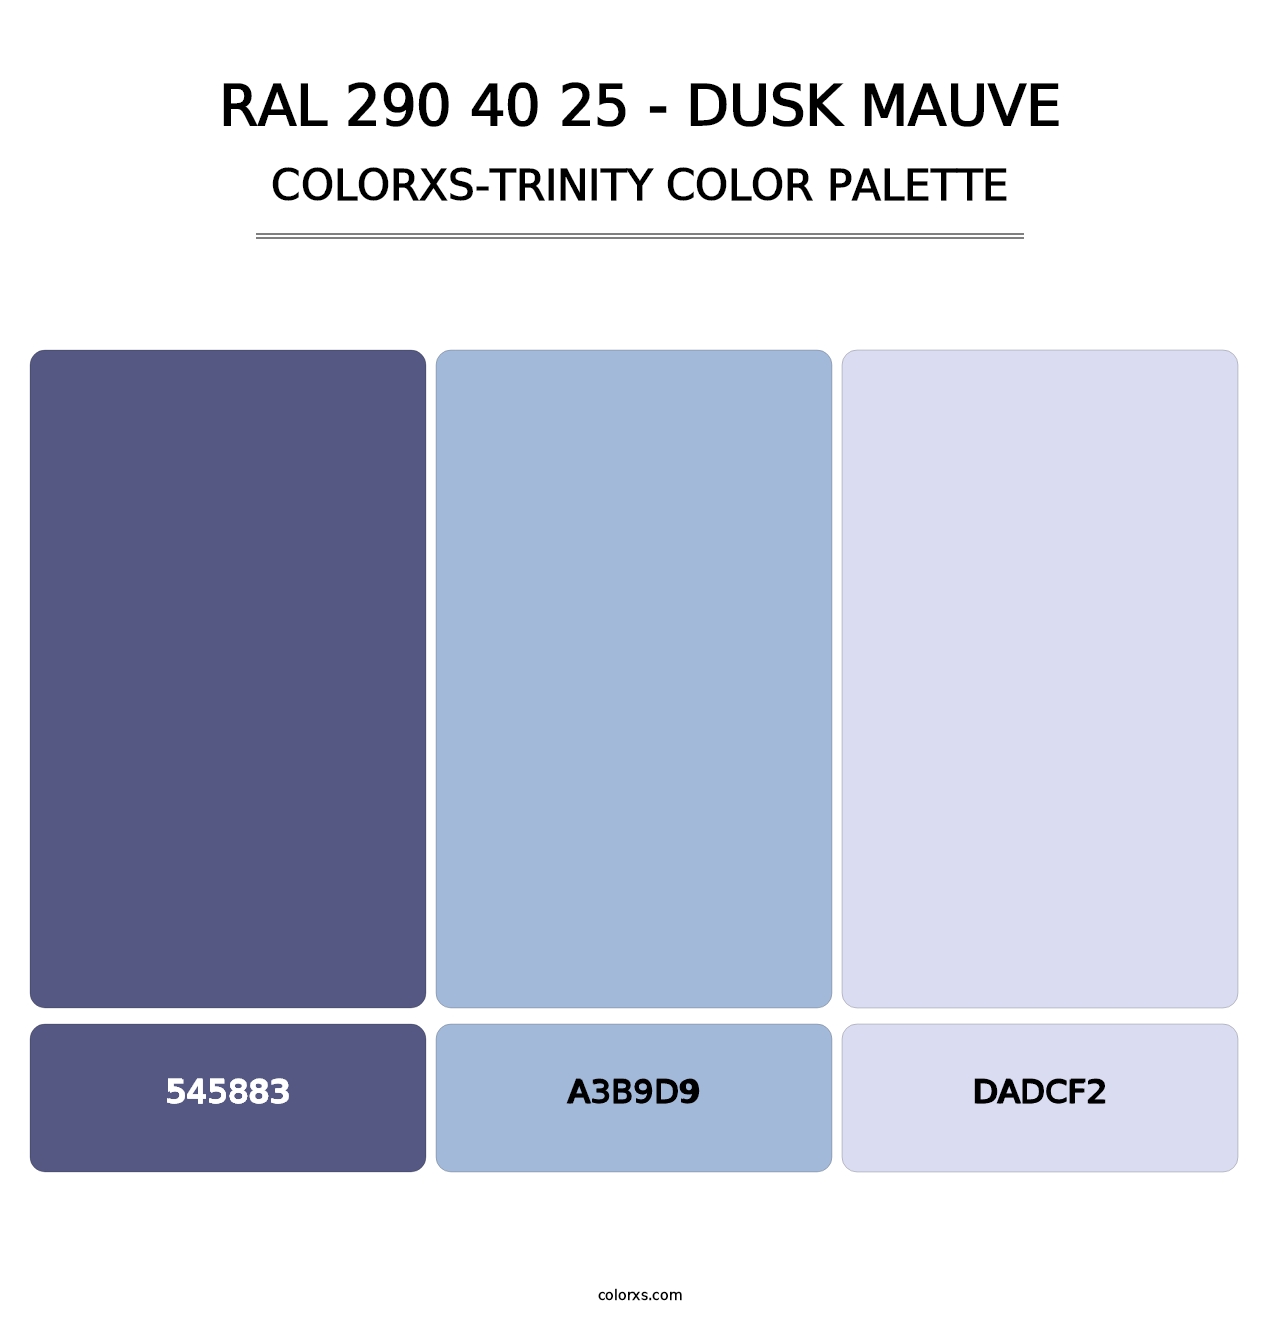 RAL 290 40 25 - Dusk Mauve - Colorxs Trinity Palette